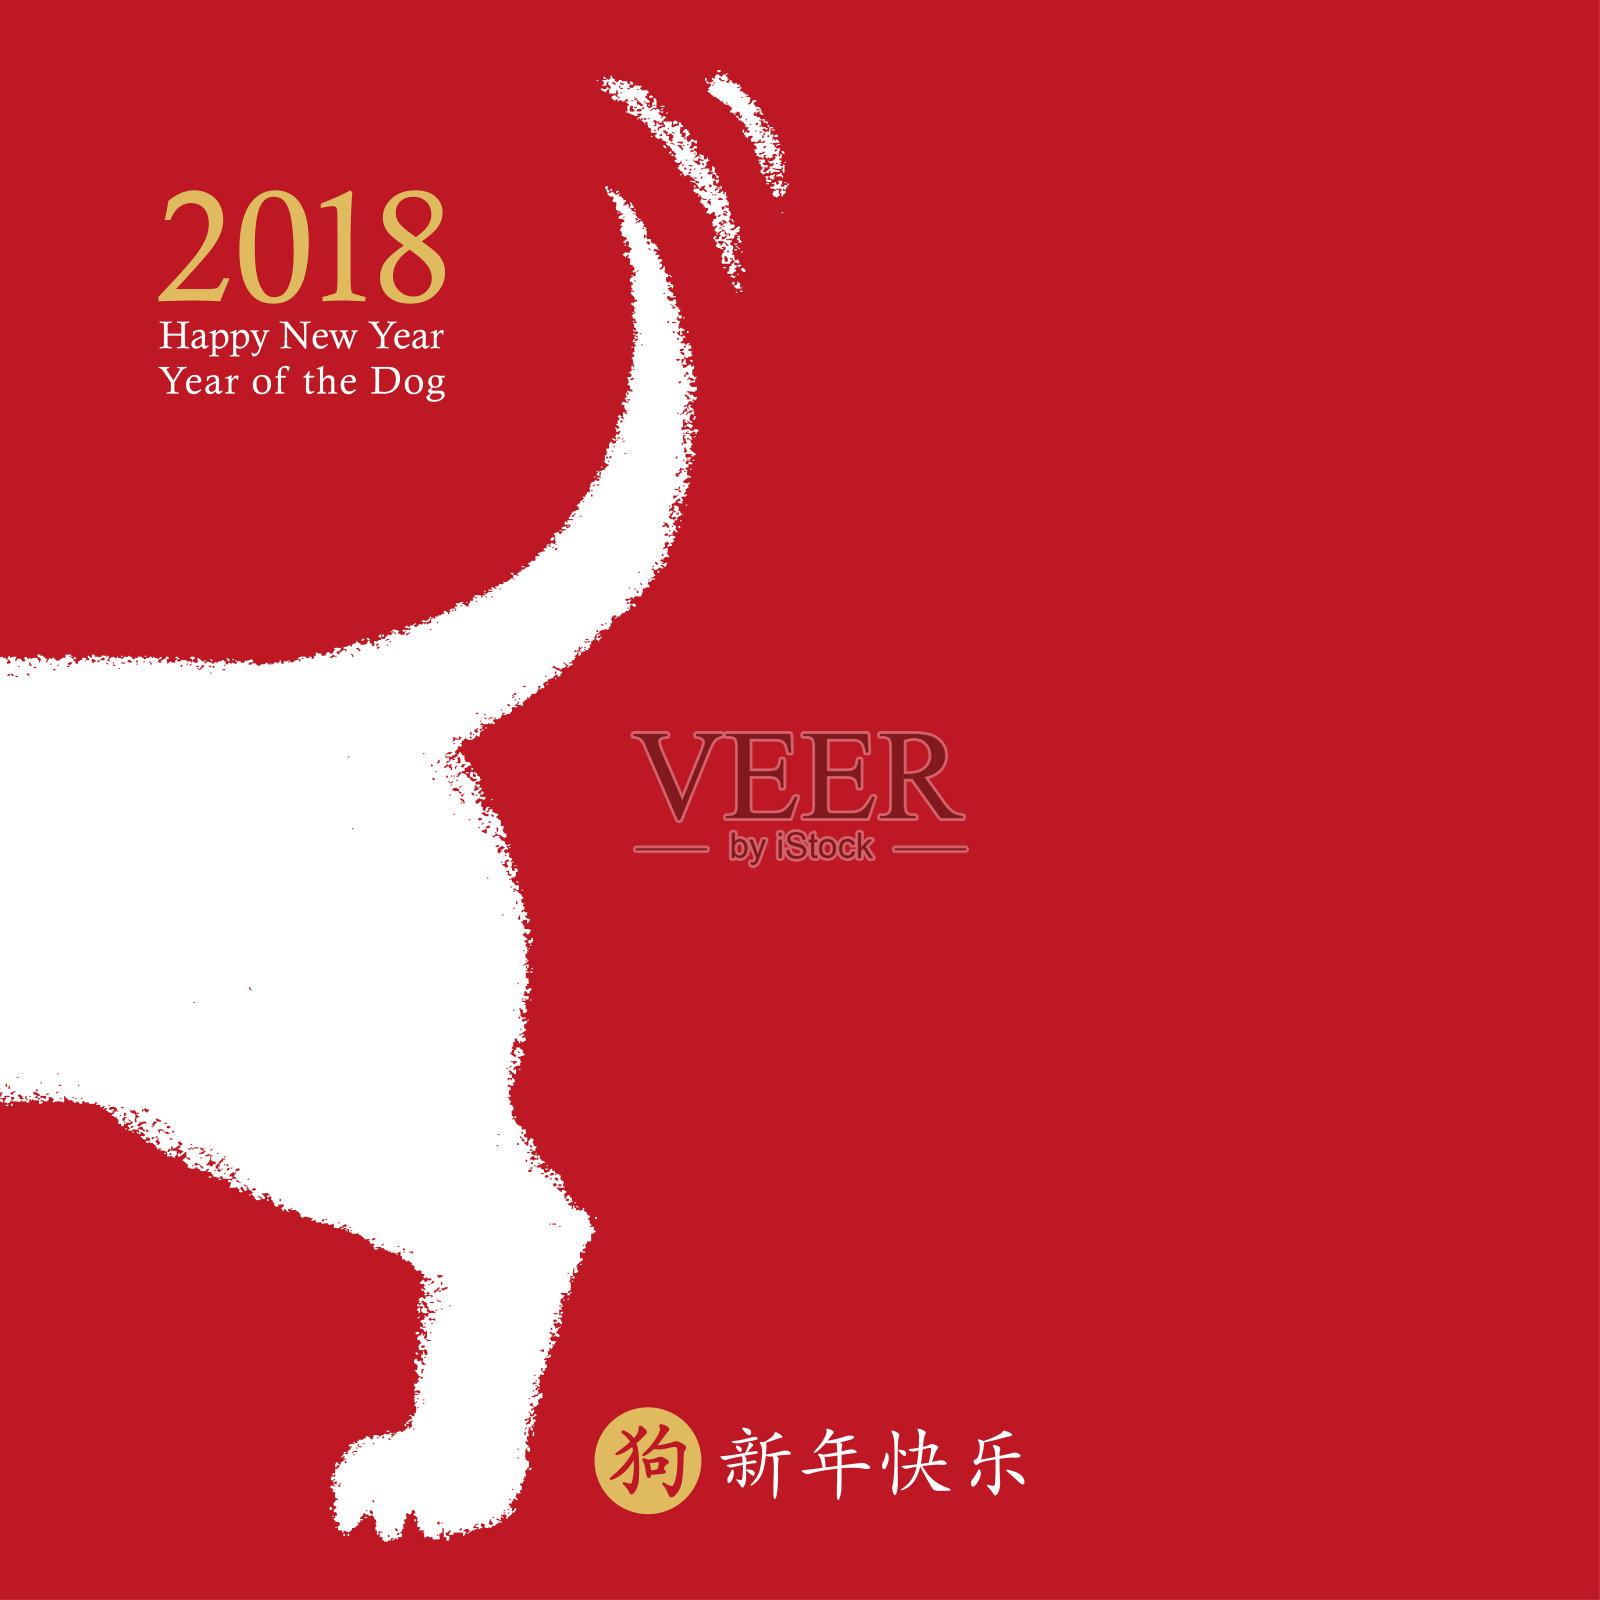 中国狗年，矢量卡设计。手画狗摇尾巴象征新年快乐，十二生肖。中国象形文字翻译:新年快乐，狗。设计模板素材